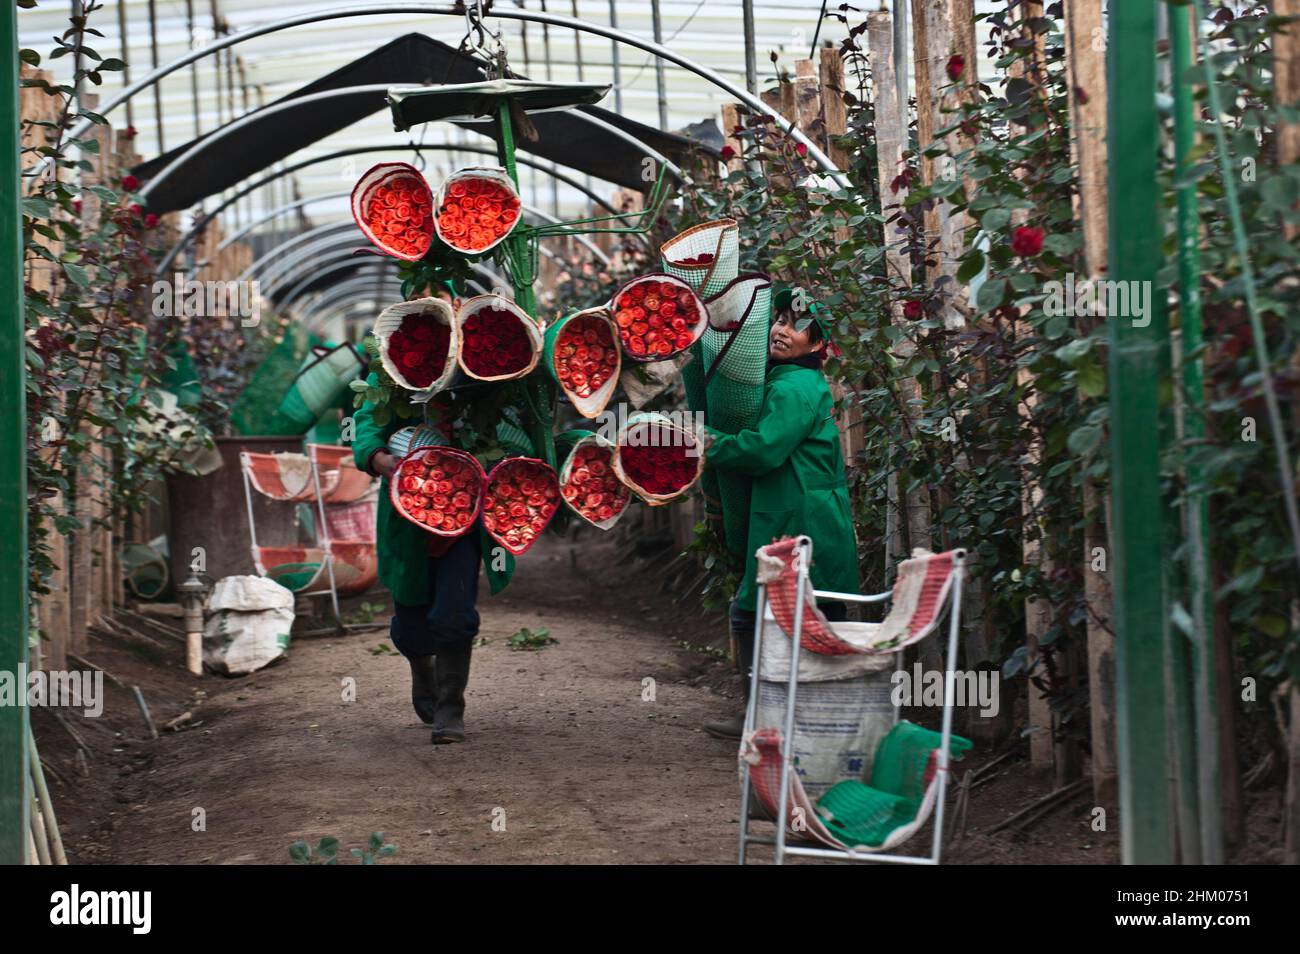 Santa Rosa, Cayambe Equateur - 8 décembre 2010 : les travailleurs des plantations emballez des roses pendant la période de récolte Banque D'Images